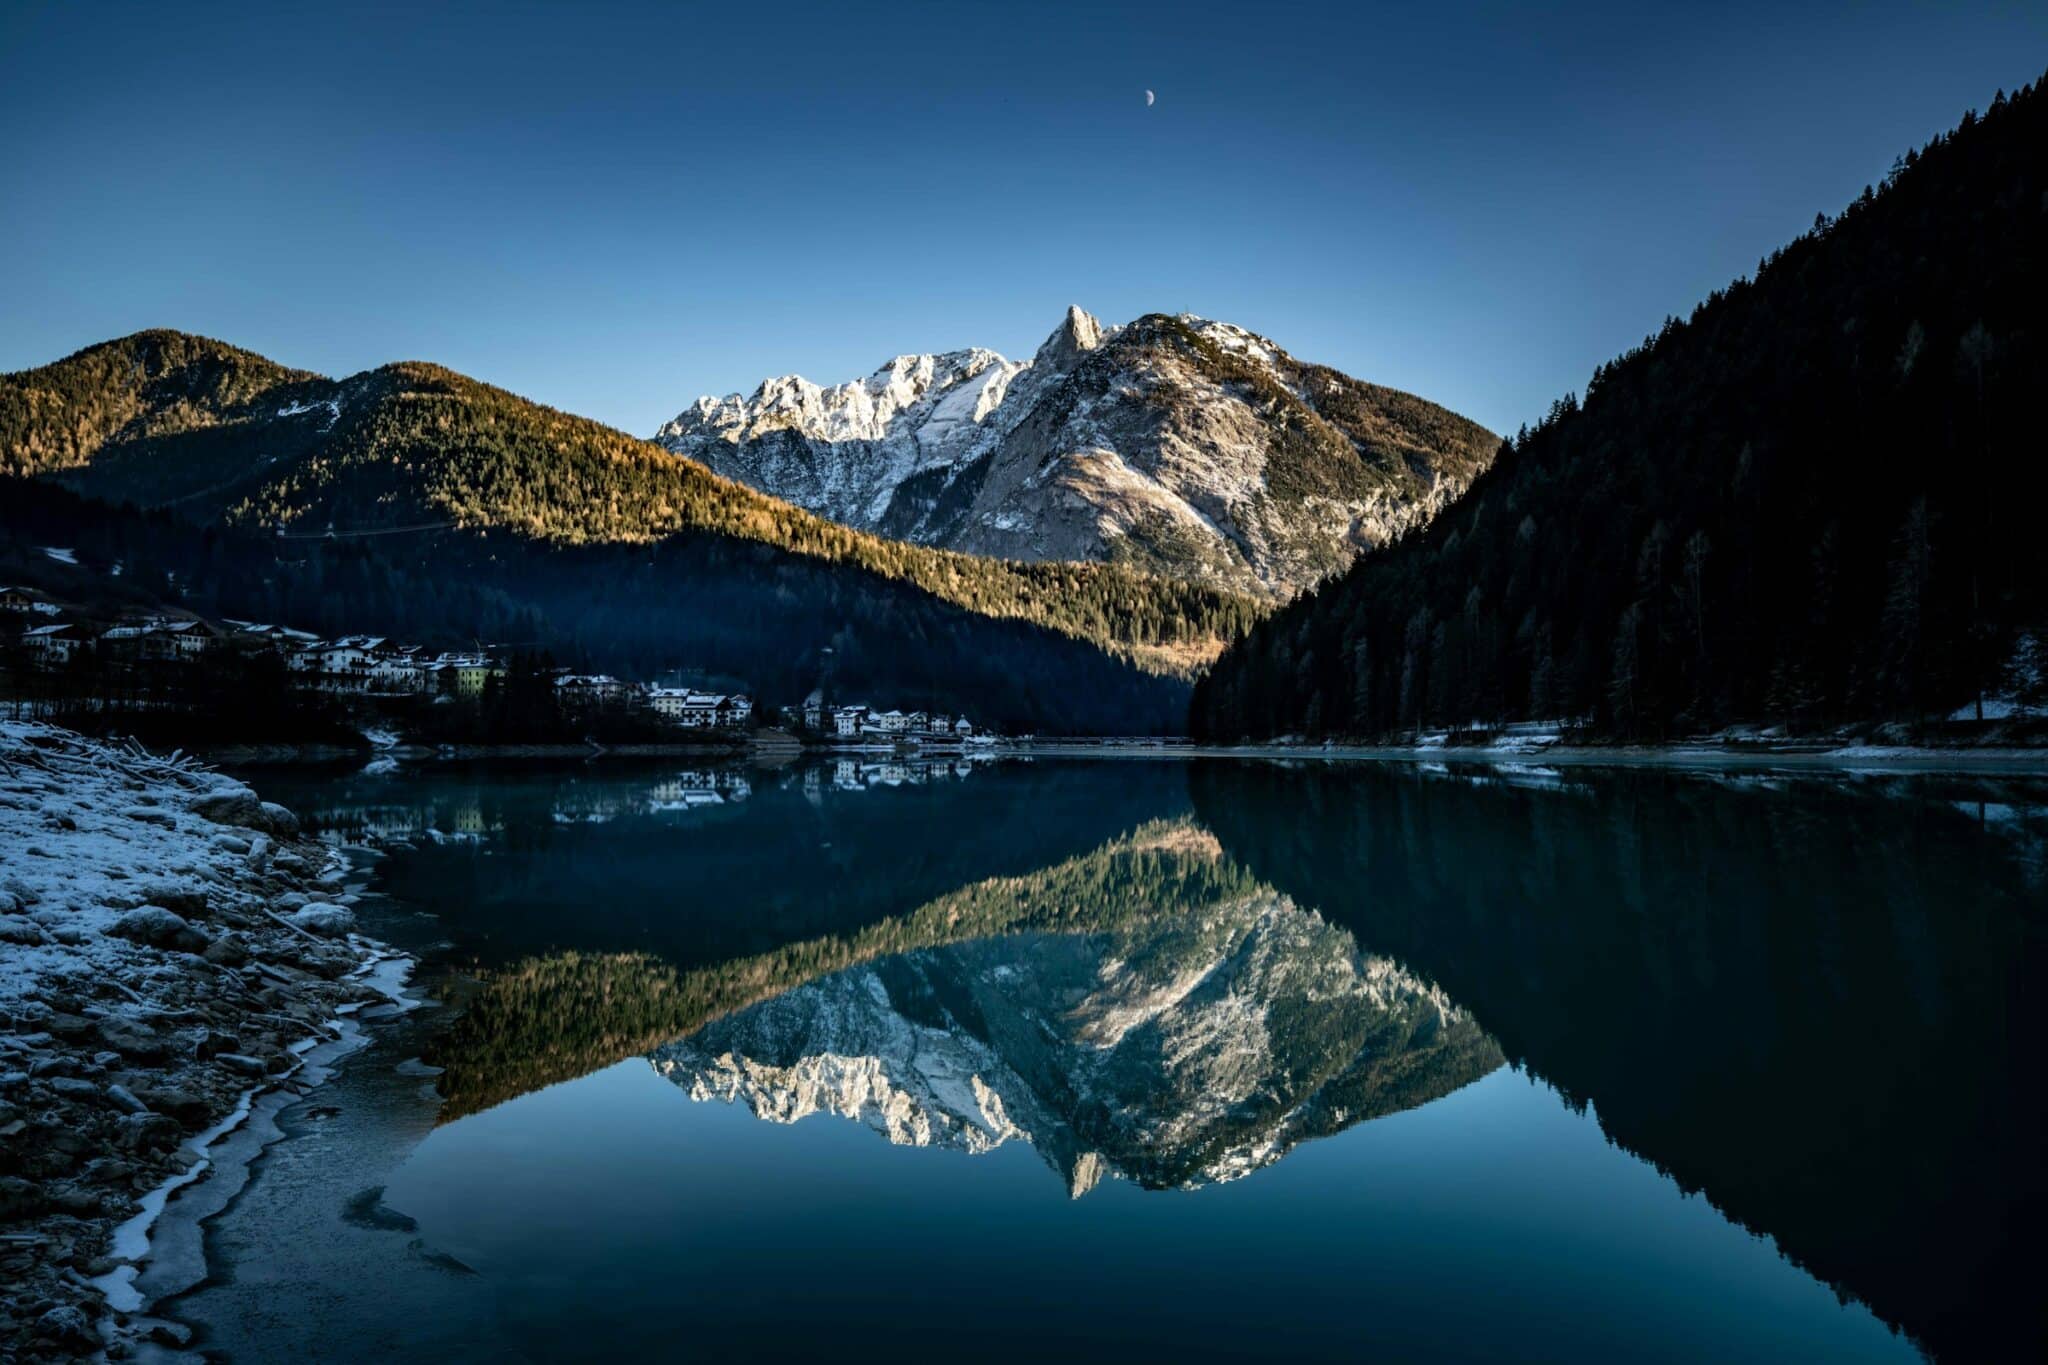 Mountain reflection by Francesco